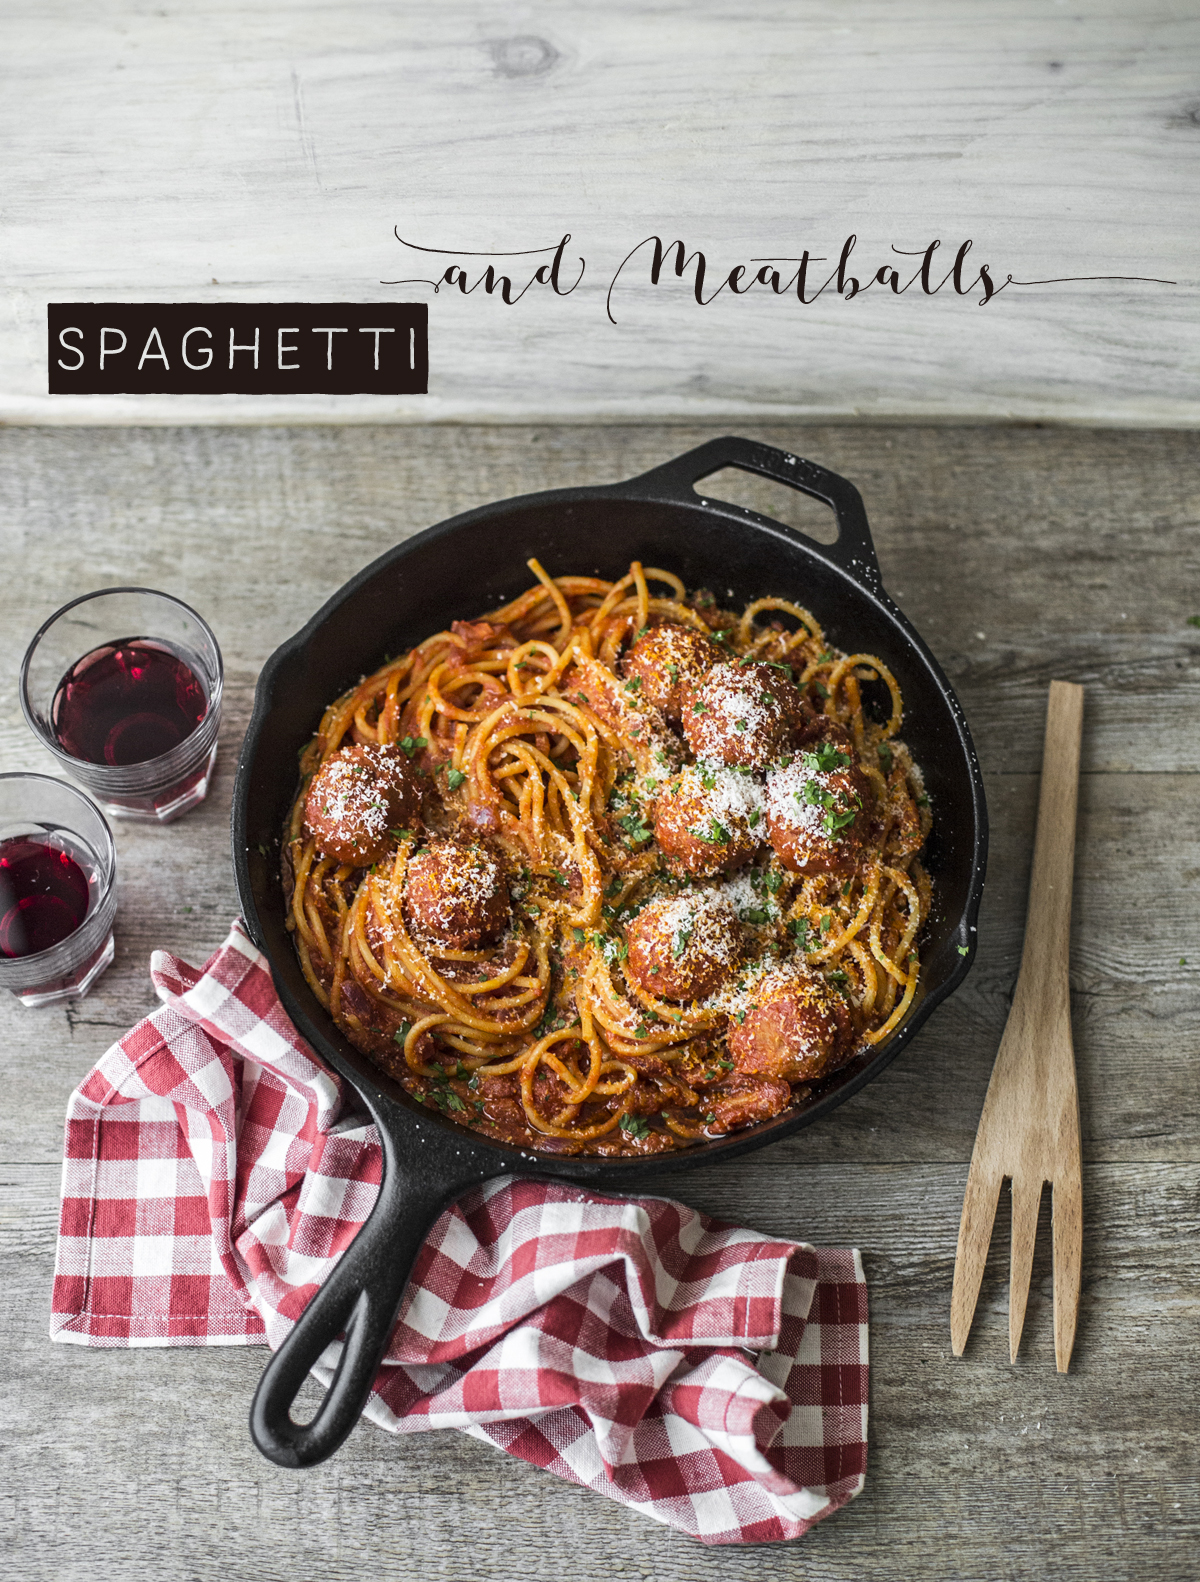 Spaghetti and Meatballs | Vaniglia storie di Cucina